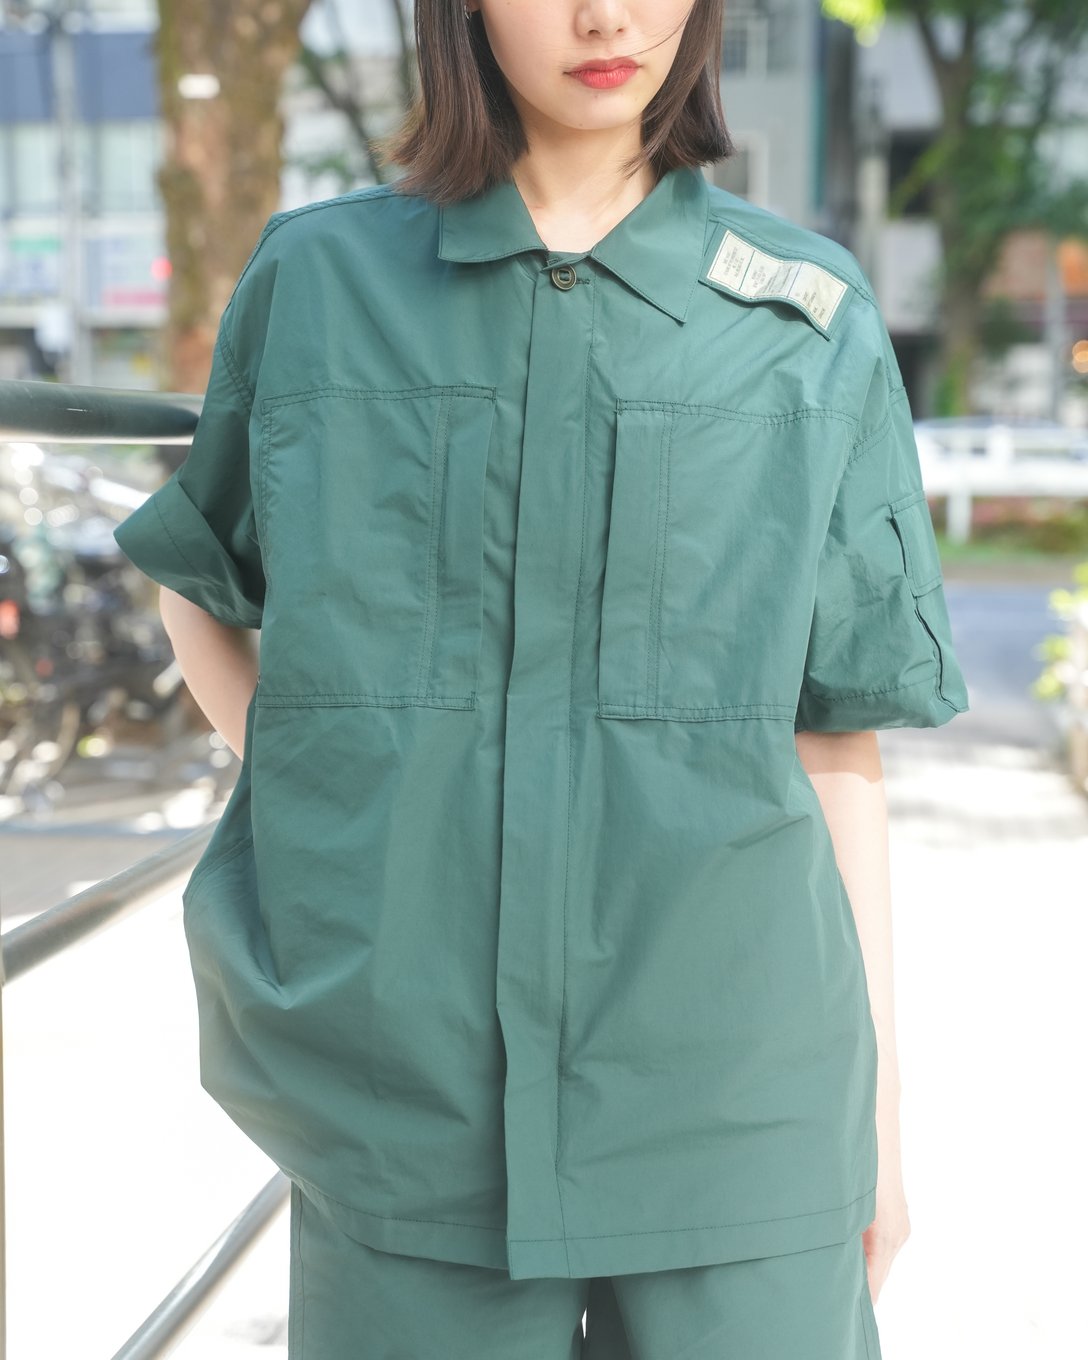 グリーンのセットアップを着用した女性モデル